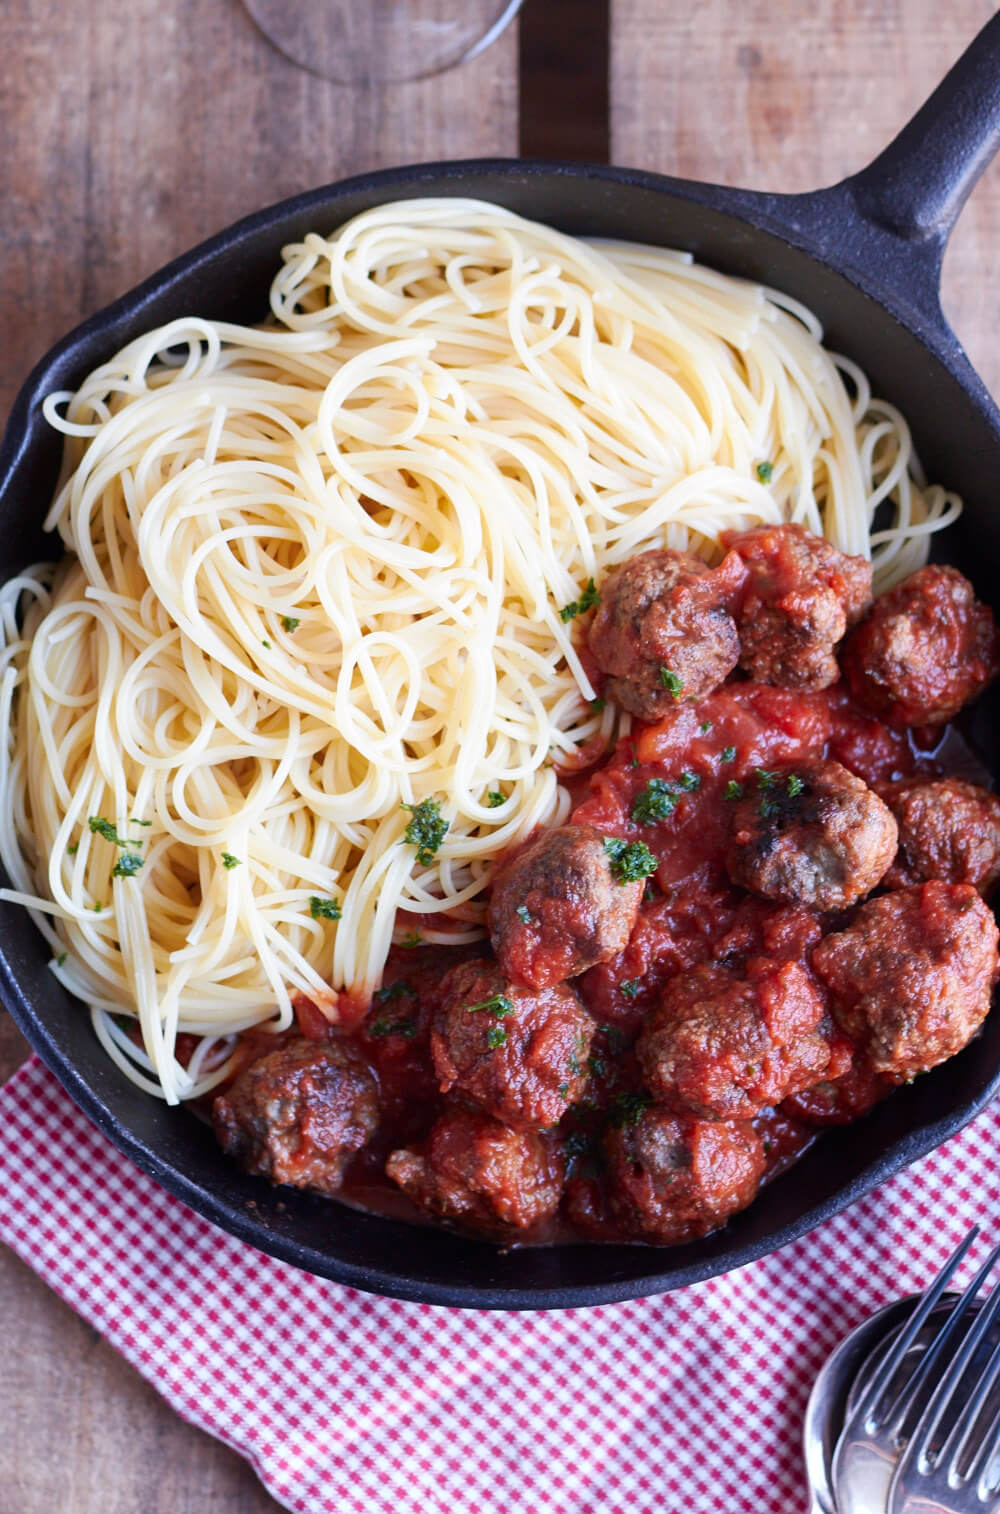 Alle lieben Pasta! In diesem Monat mit Hack und bei Tastesheriff gibt es Spaghetti mit Hackbällchen in Tomatensoße.